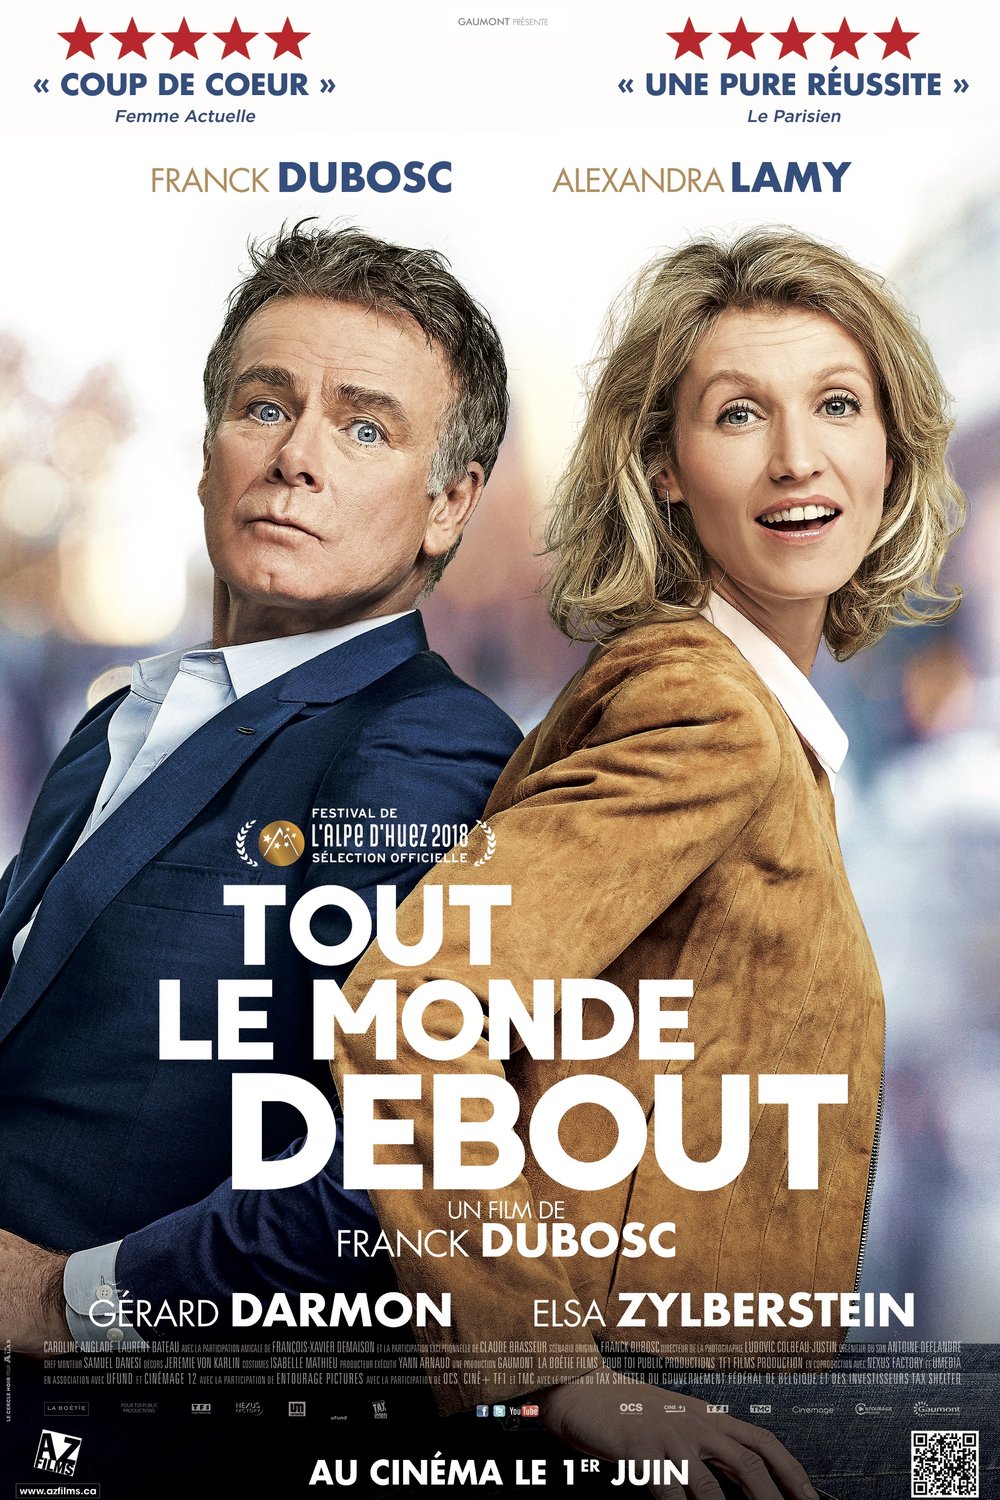 Poster of the movie Tout le monde debout